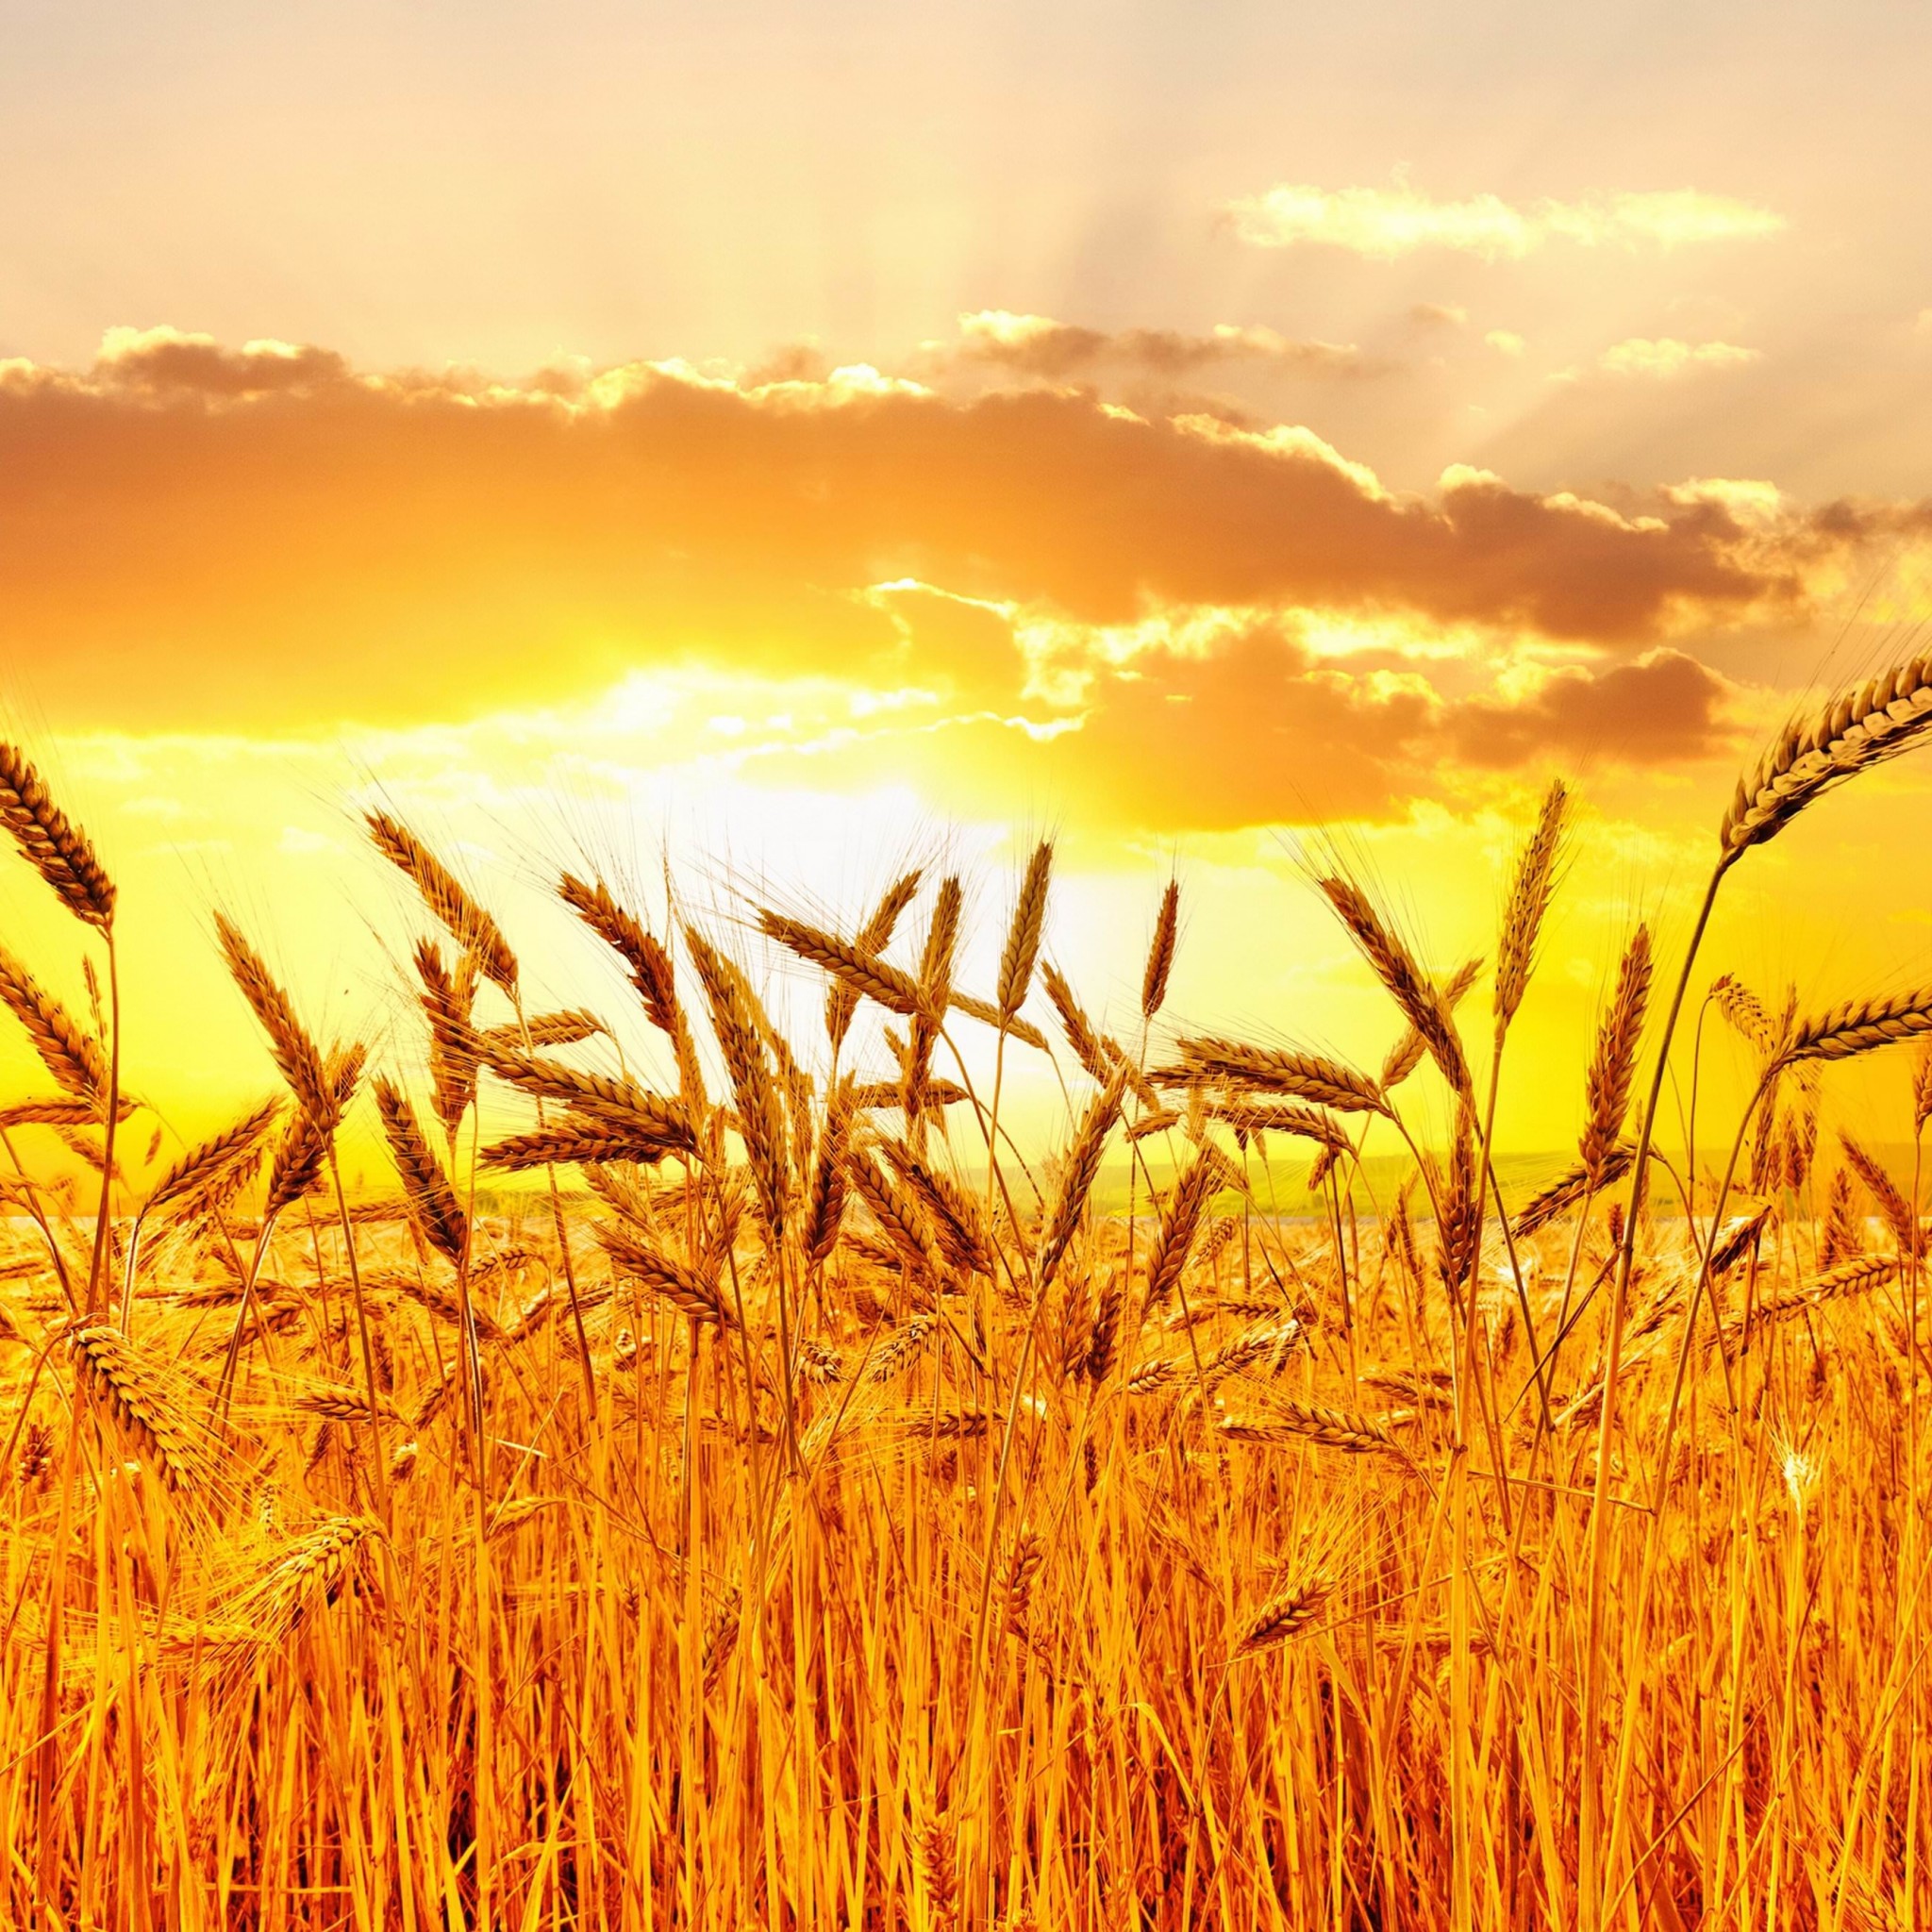 Golden Wheat Field At Sunset Wallpaper for Google Nexus 9